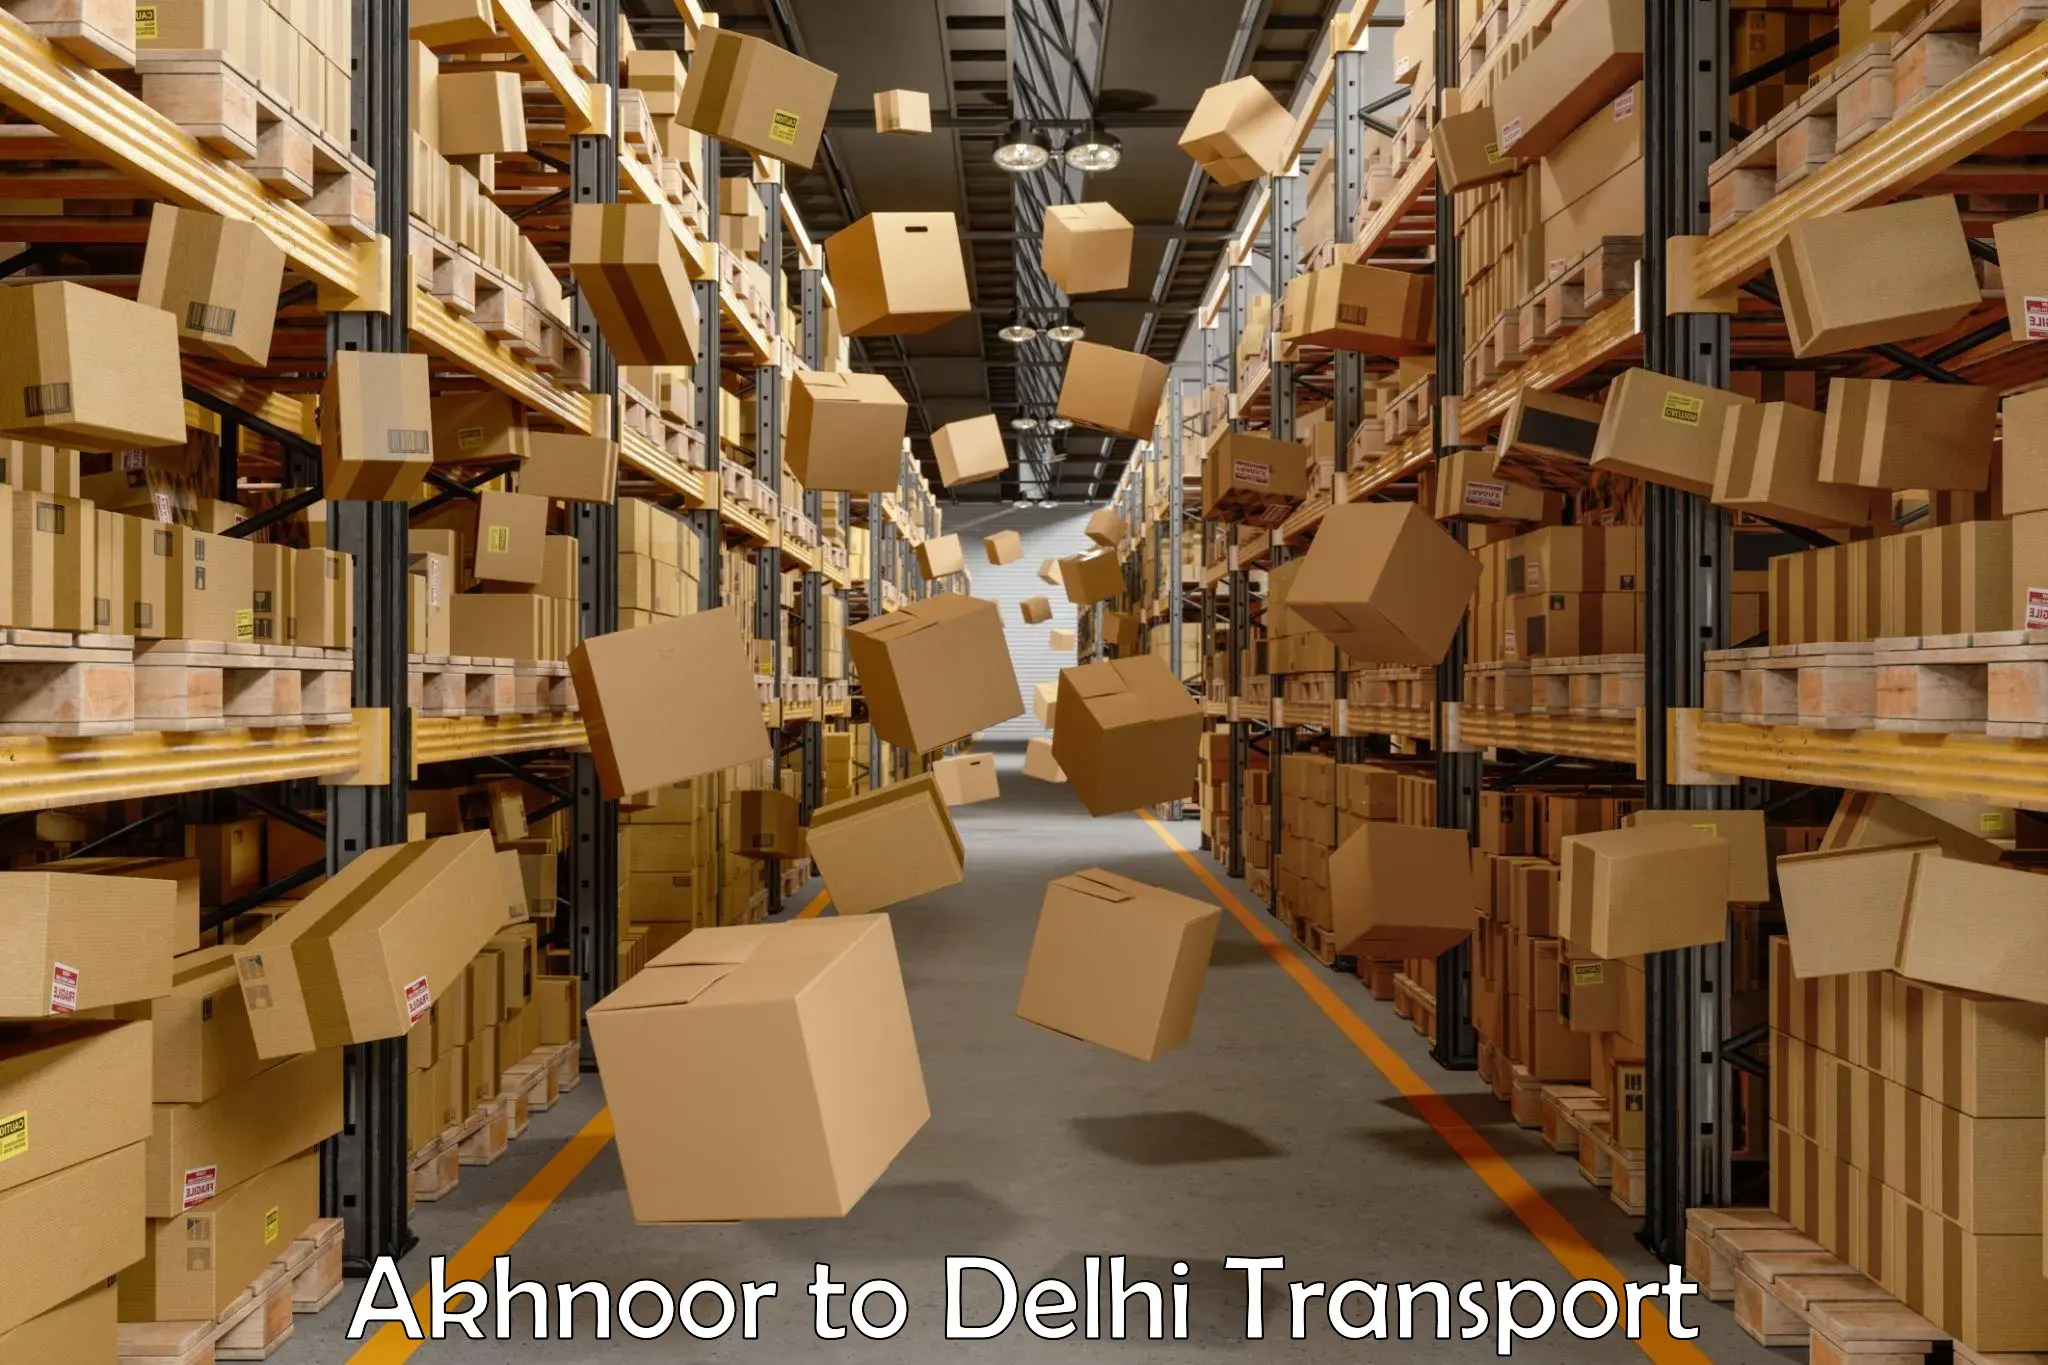 Daily transport service Akhnoor to Delhi